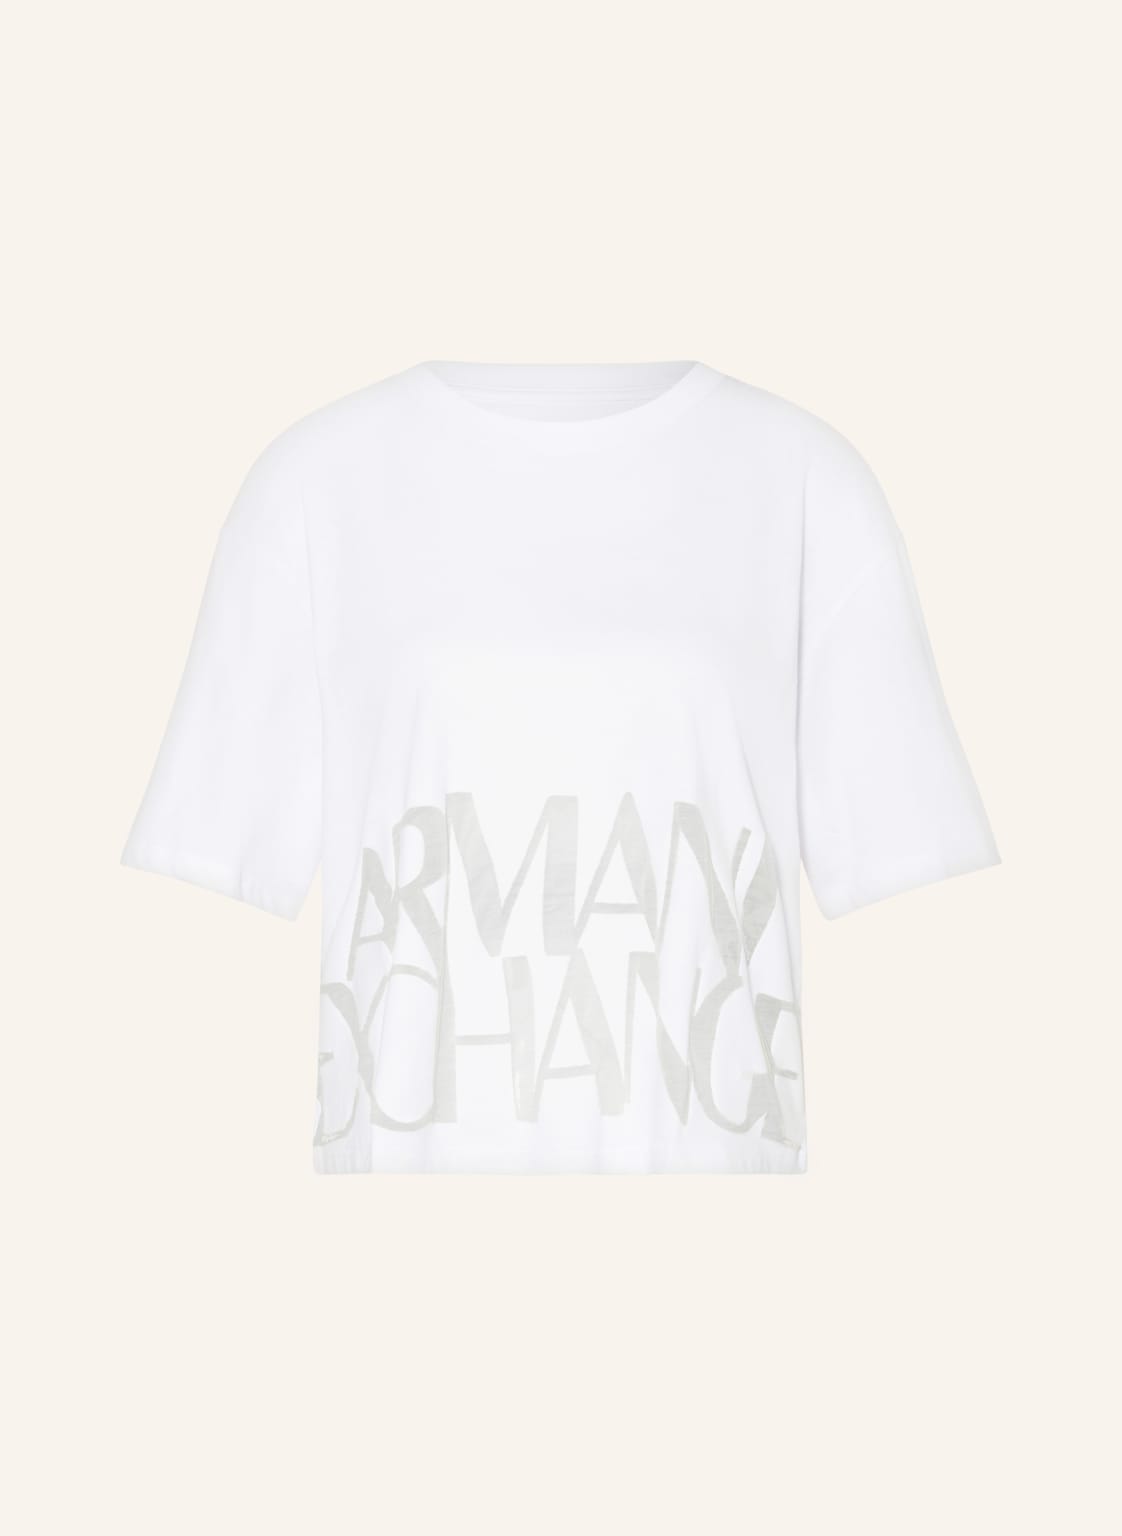 Armani Exchange T-Shirt weiss von Armani Exchange